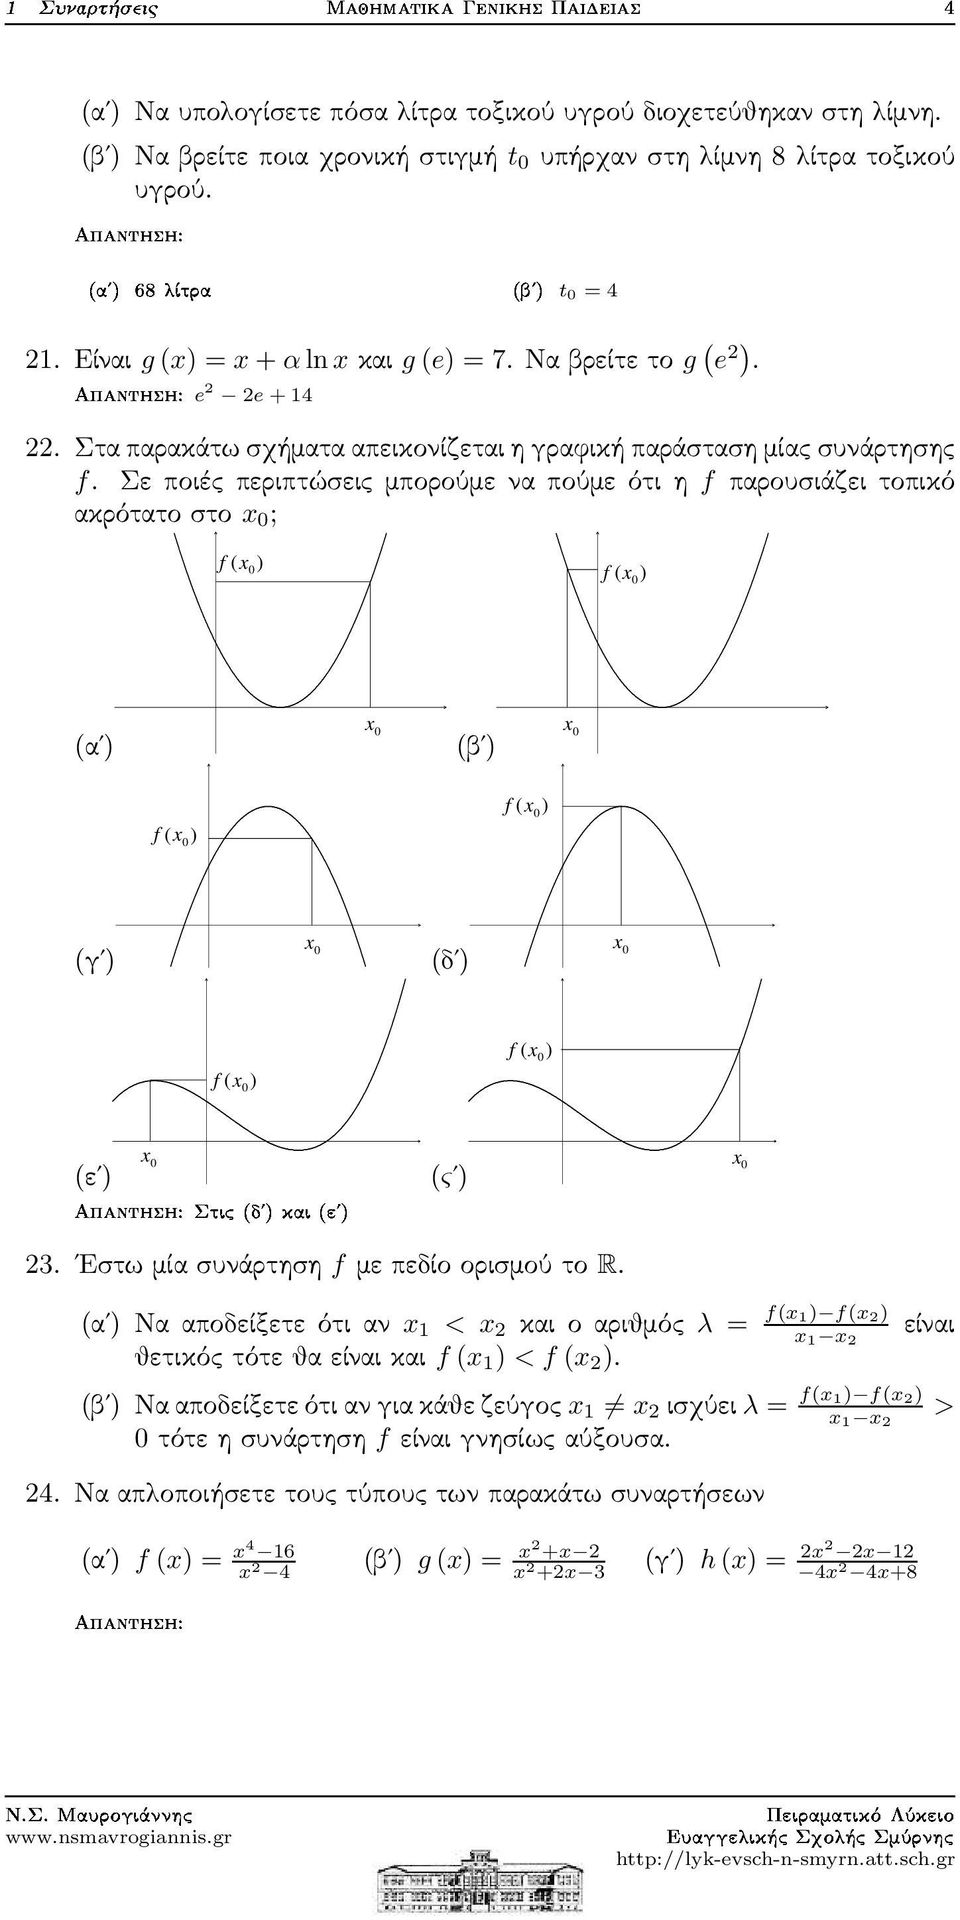 Σεποιέςπεριπτώσειςμπορούμεναπούμεότιηf παρουσιάζειτοπικό ακρότατοστο x 0 ; f ( x0) f ( x0) (α ) x 0 (β ) x 0 f ( x0) f ( x0) x 0 (γ ) ËØ ³µ ³µ f ( x0) x 0 (ε ) (δ ) (ς ) f ( x0) x 0 x 0 3.